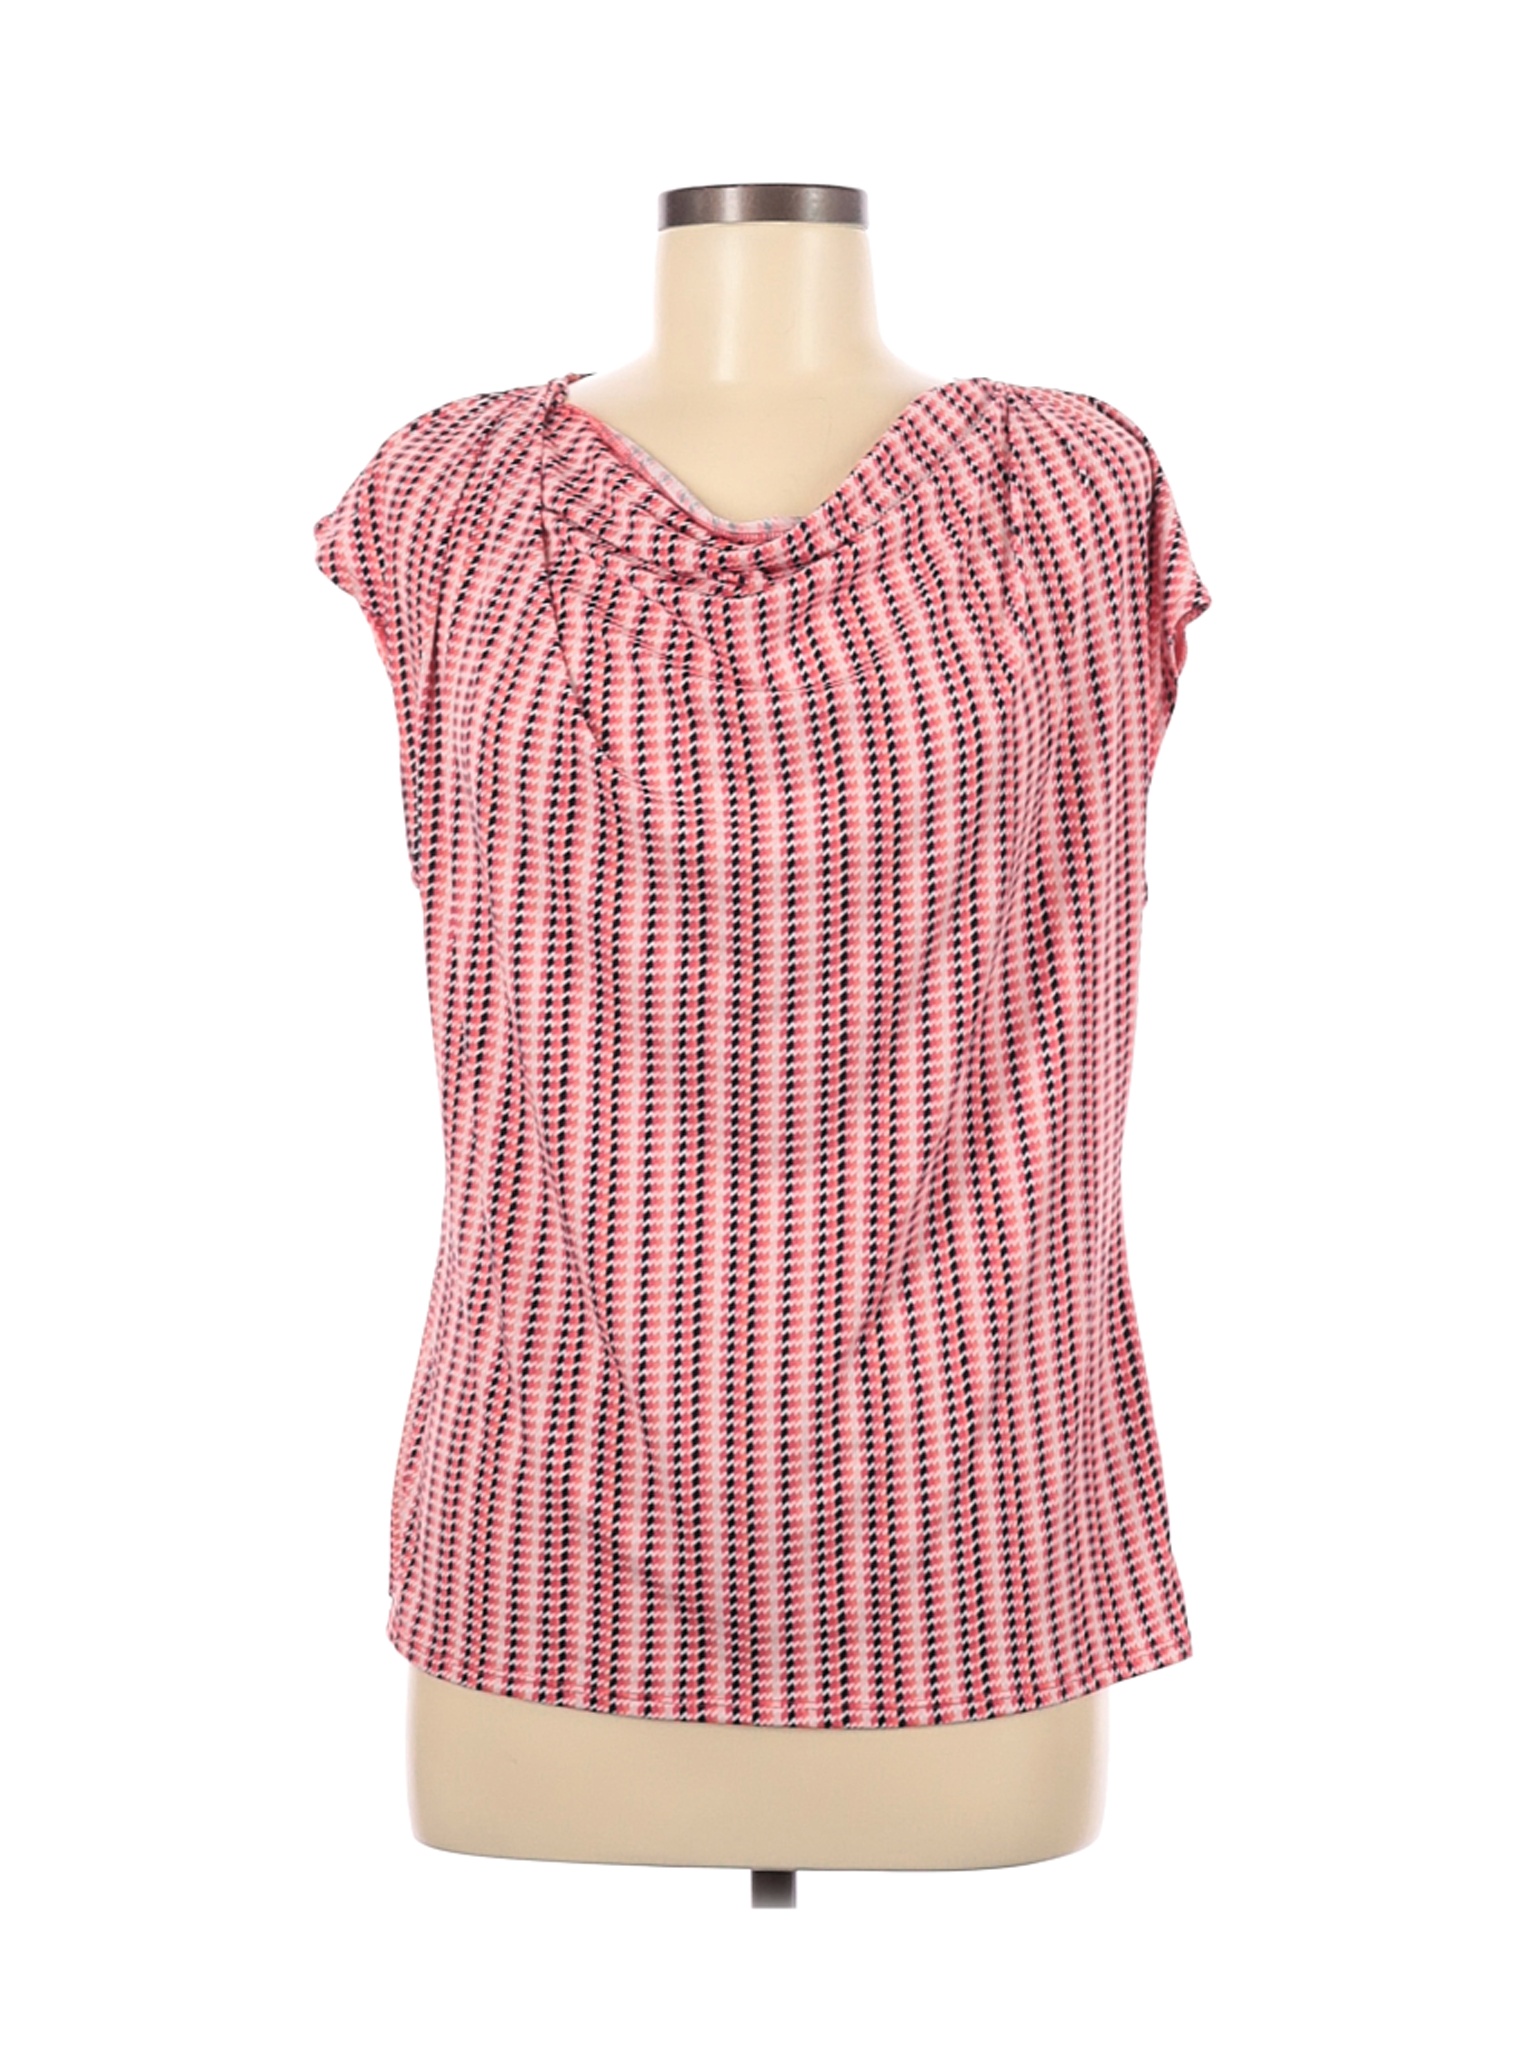 Liz Claiborne Women Pink Short Sleeve Top M | eBay